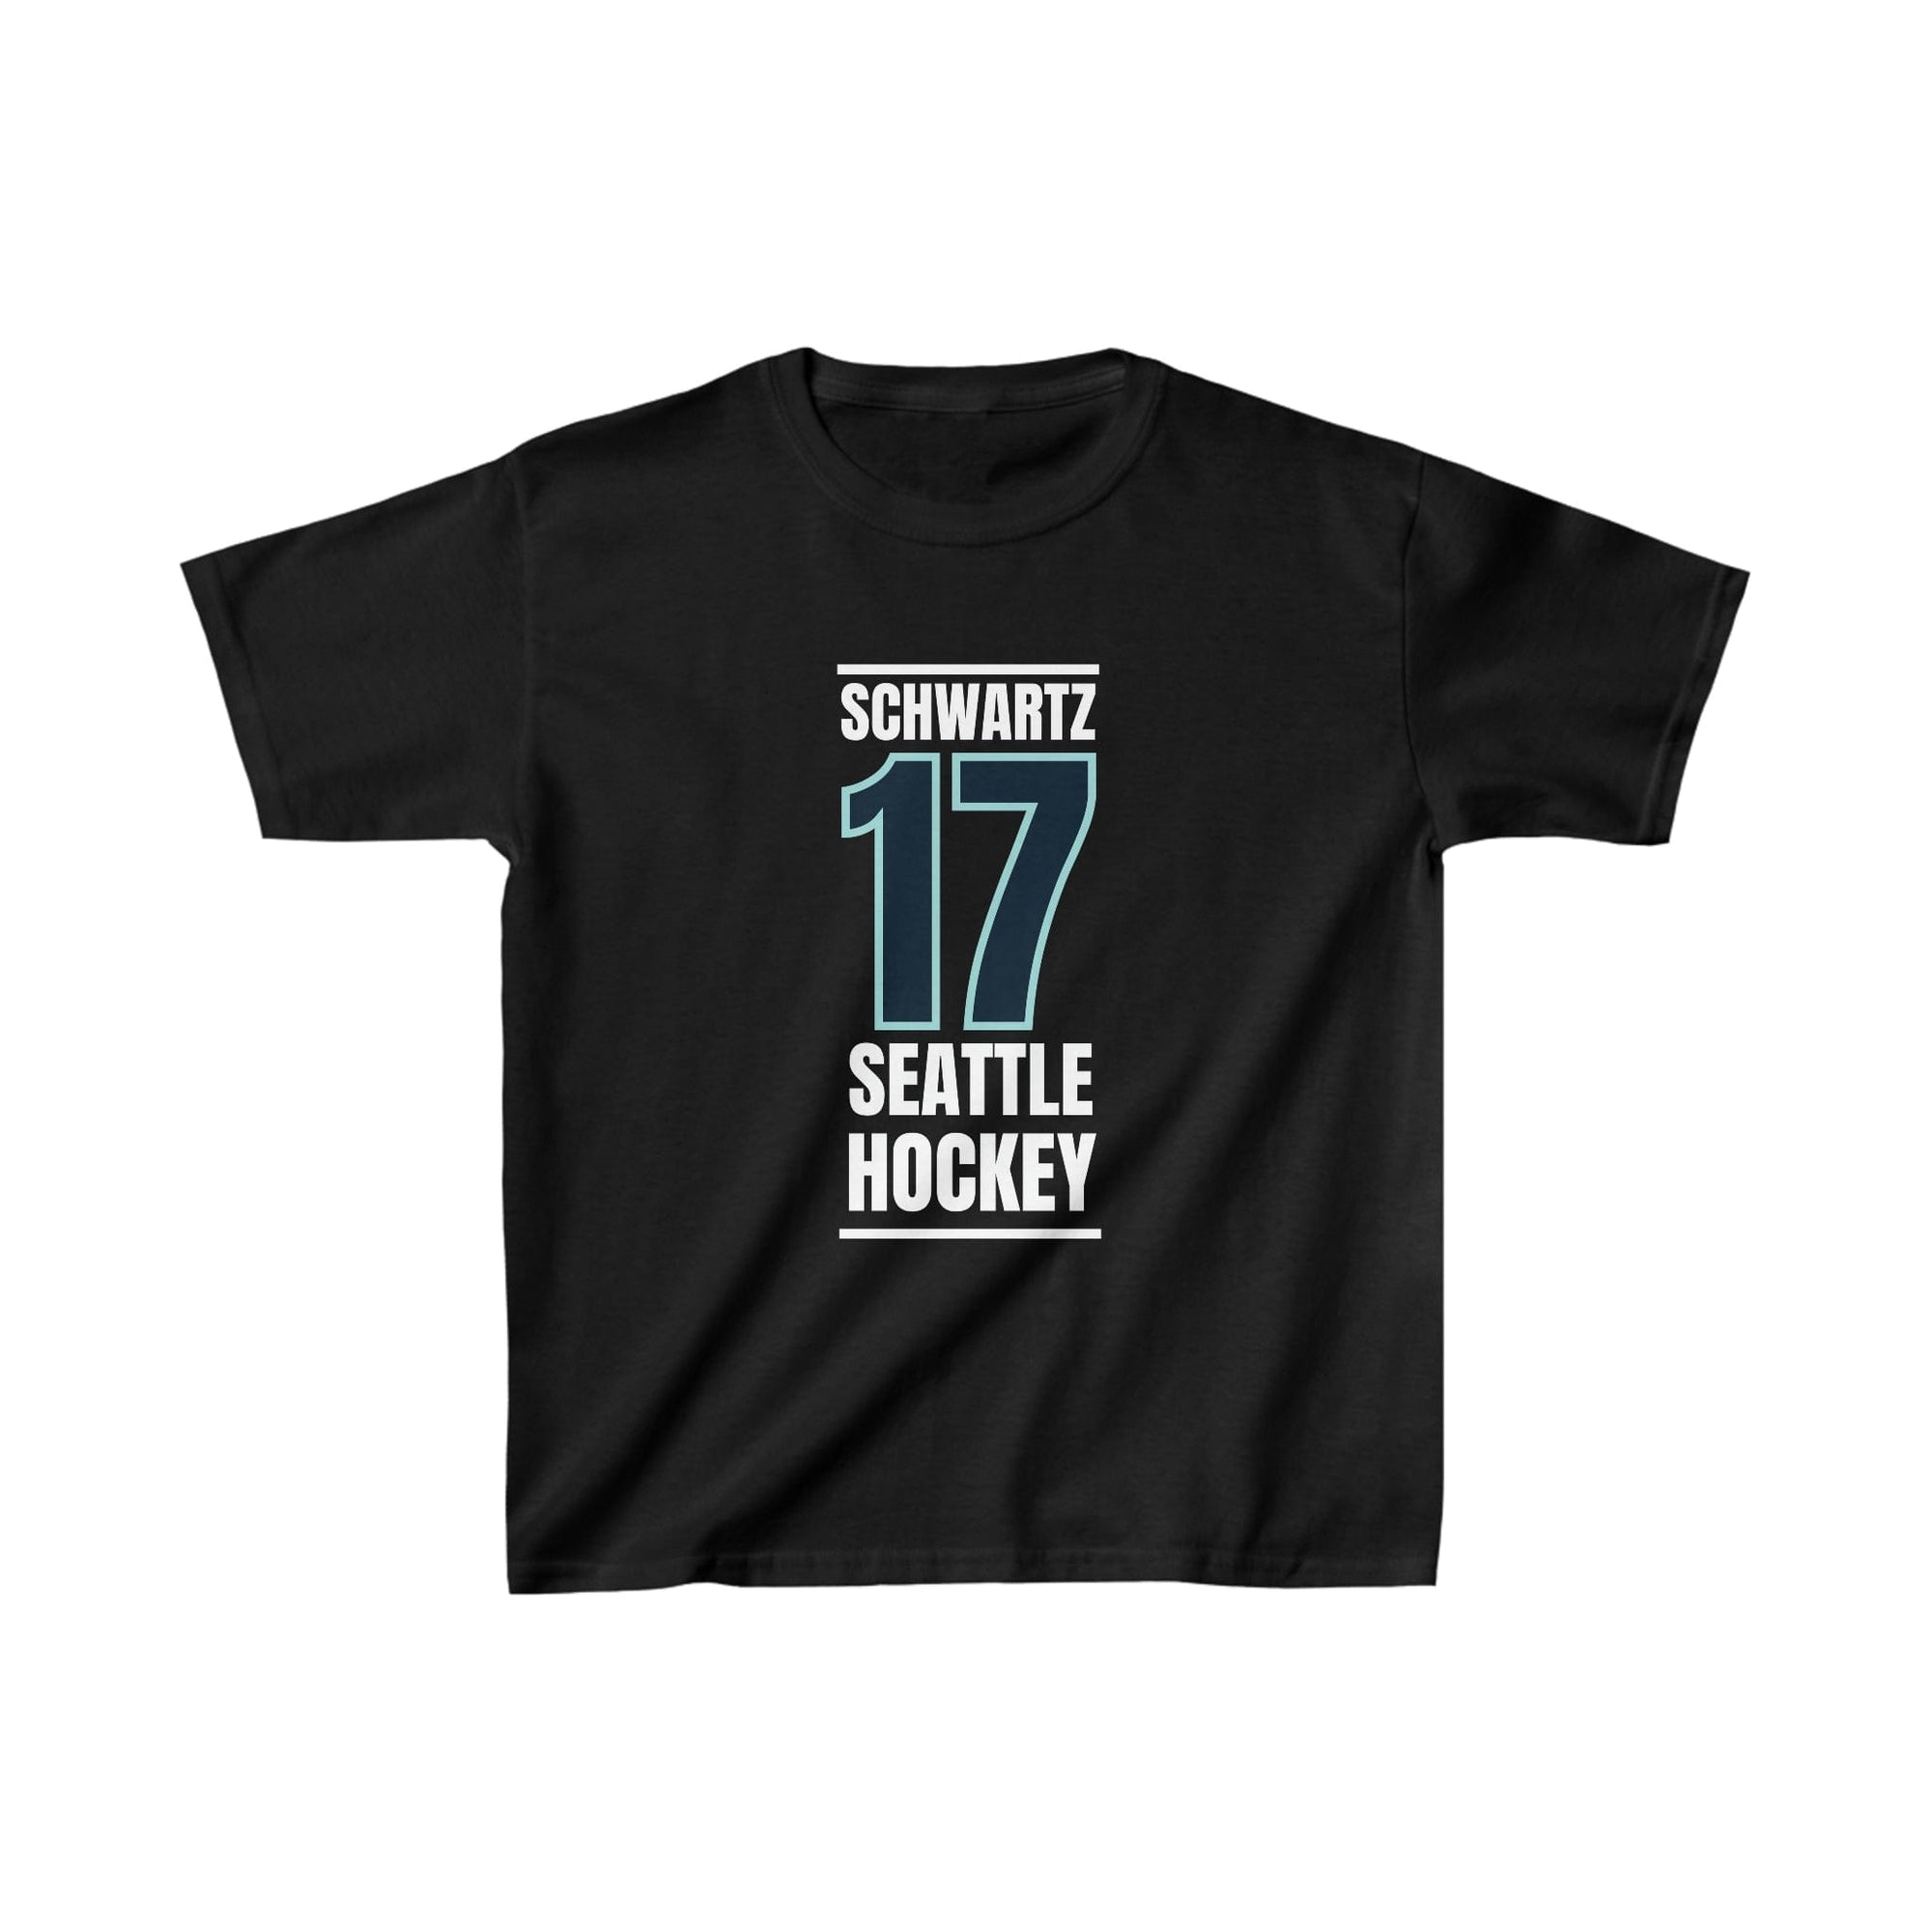 Kids clothes Schwartz 17 Seattle Hockey Black Vertical Design Kids Tee